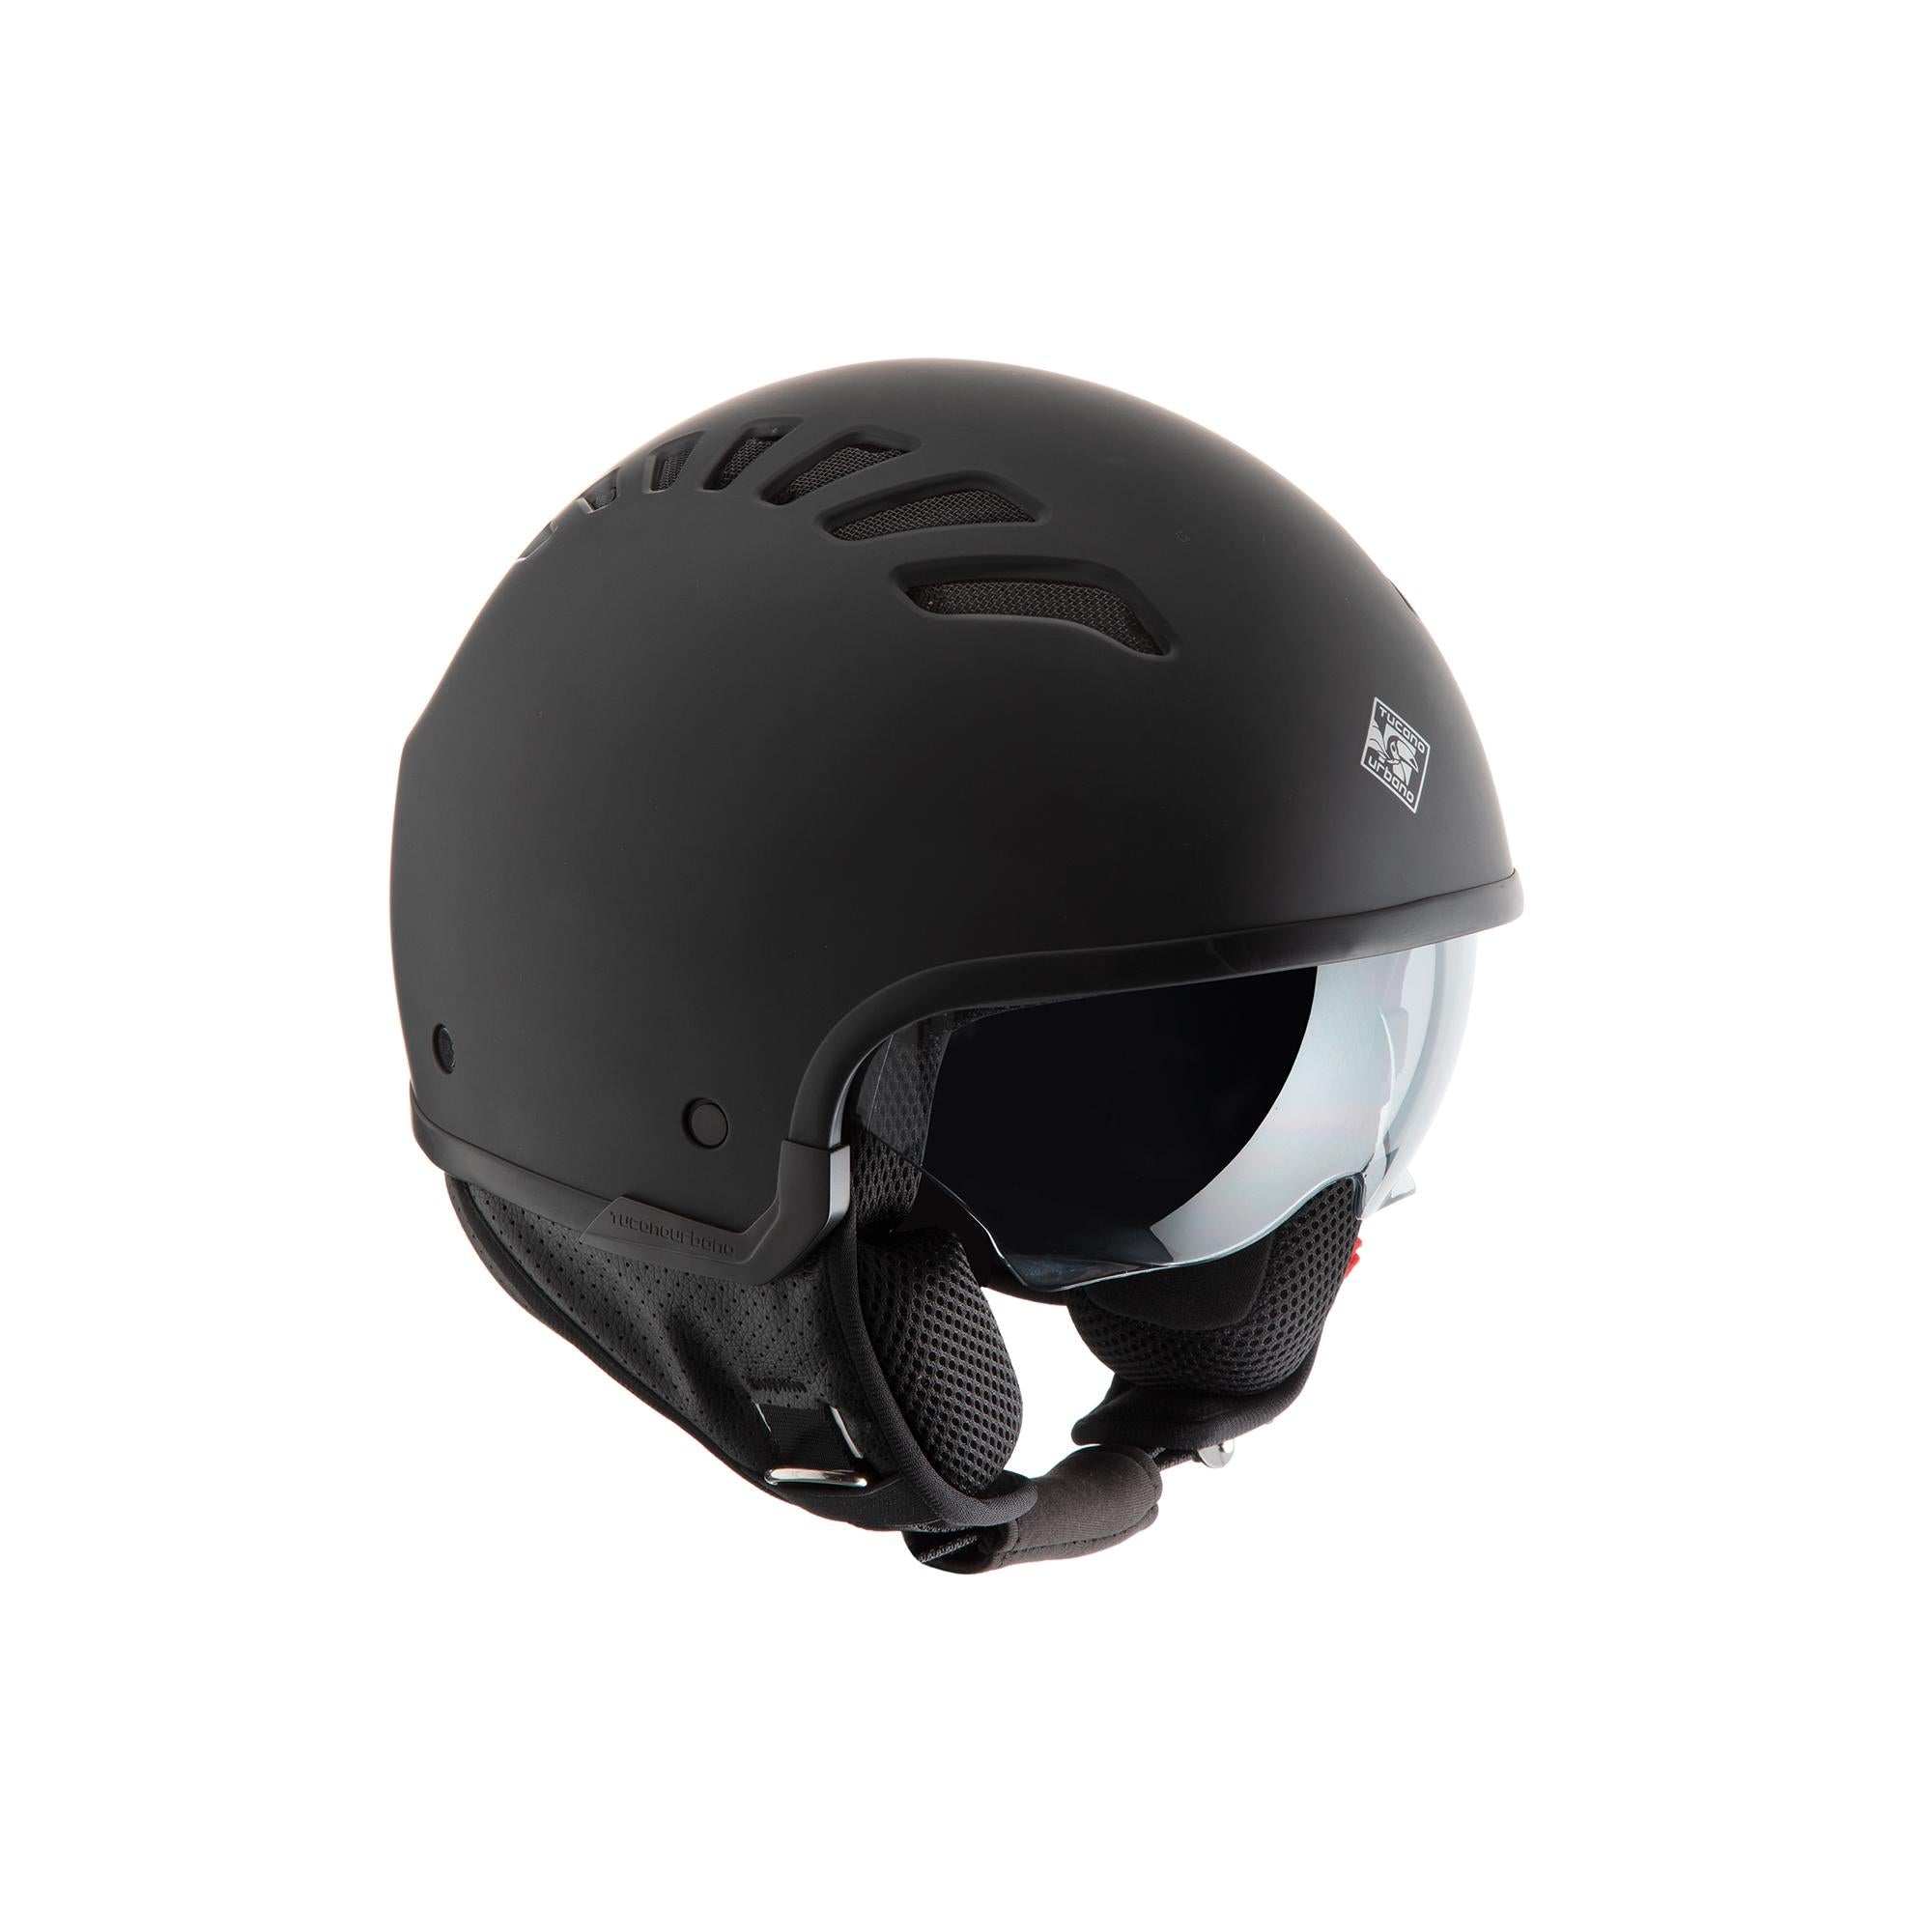 TUCANO URBANO EL'FLESH matt carbon gray helmet - 0